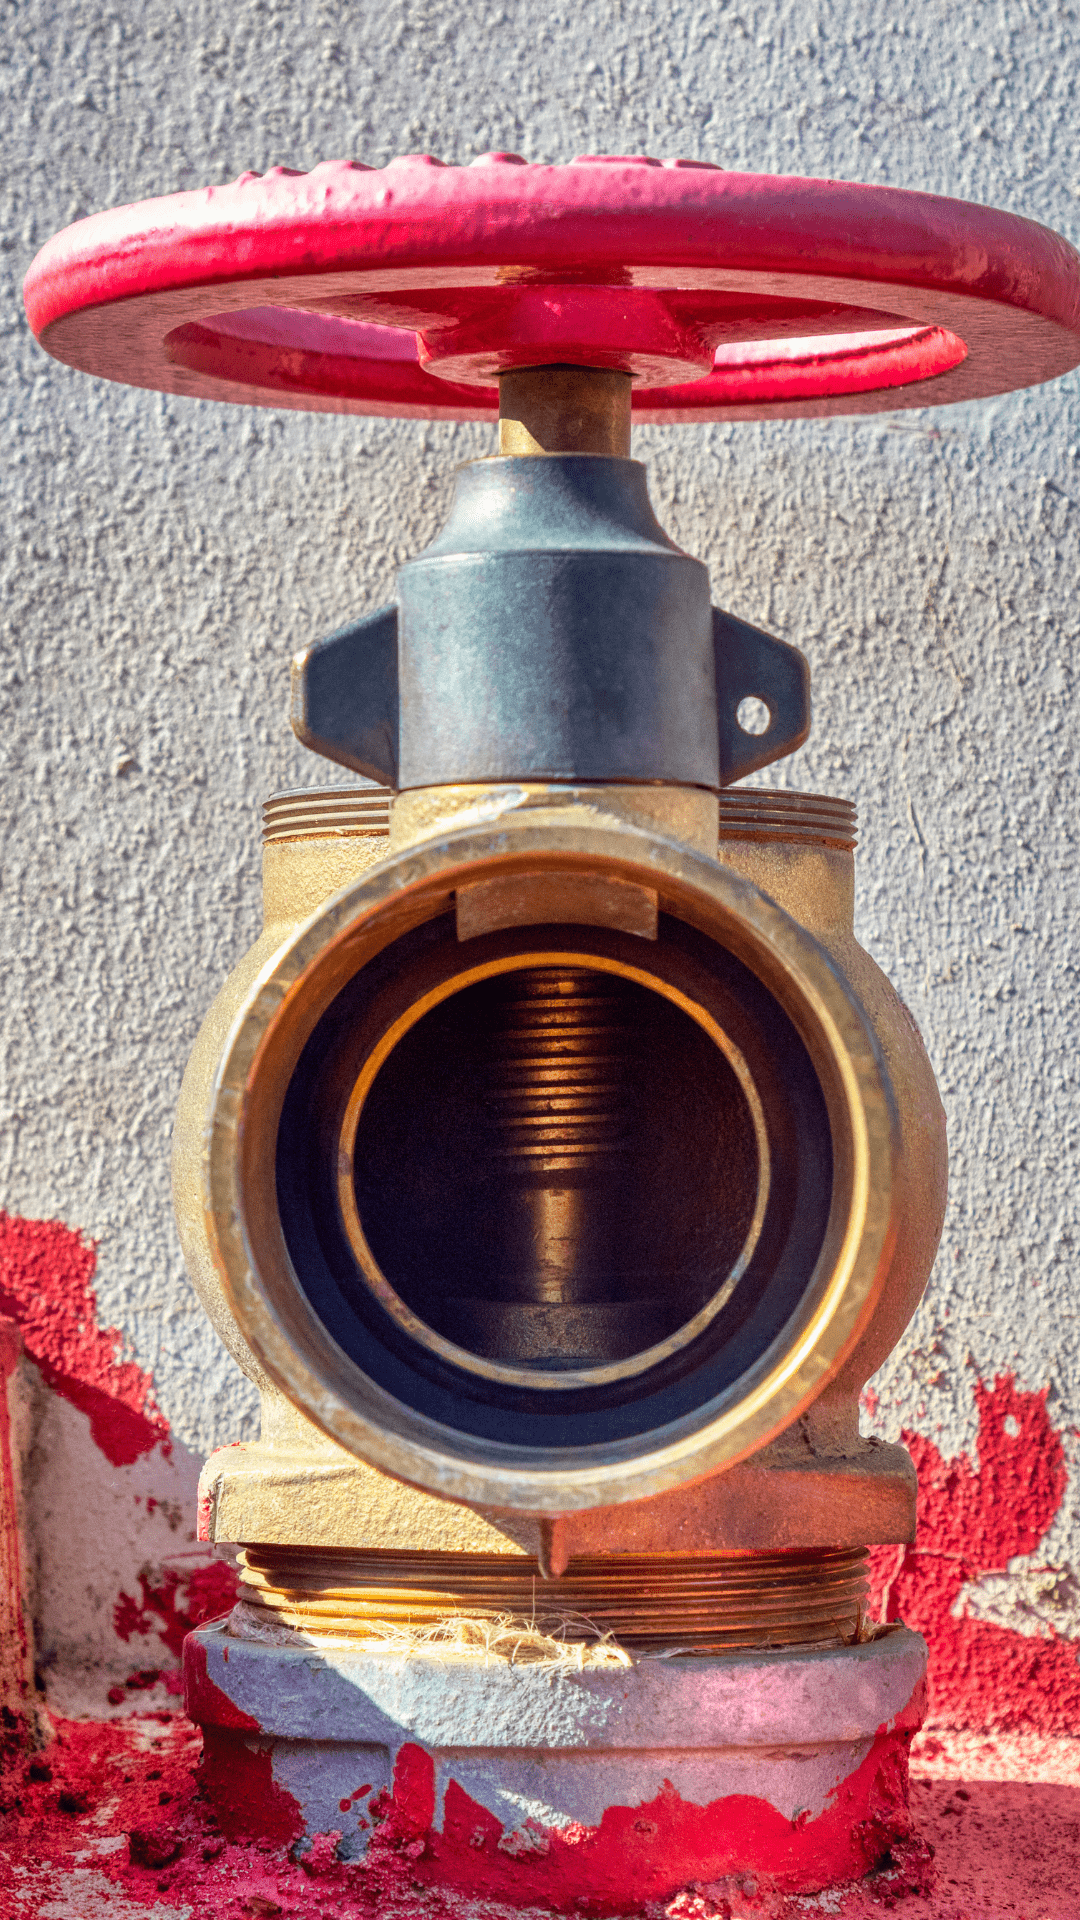 valve repair or replacement